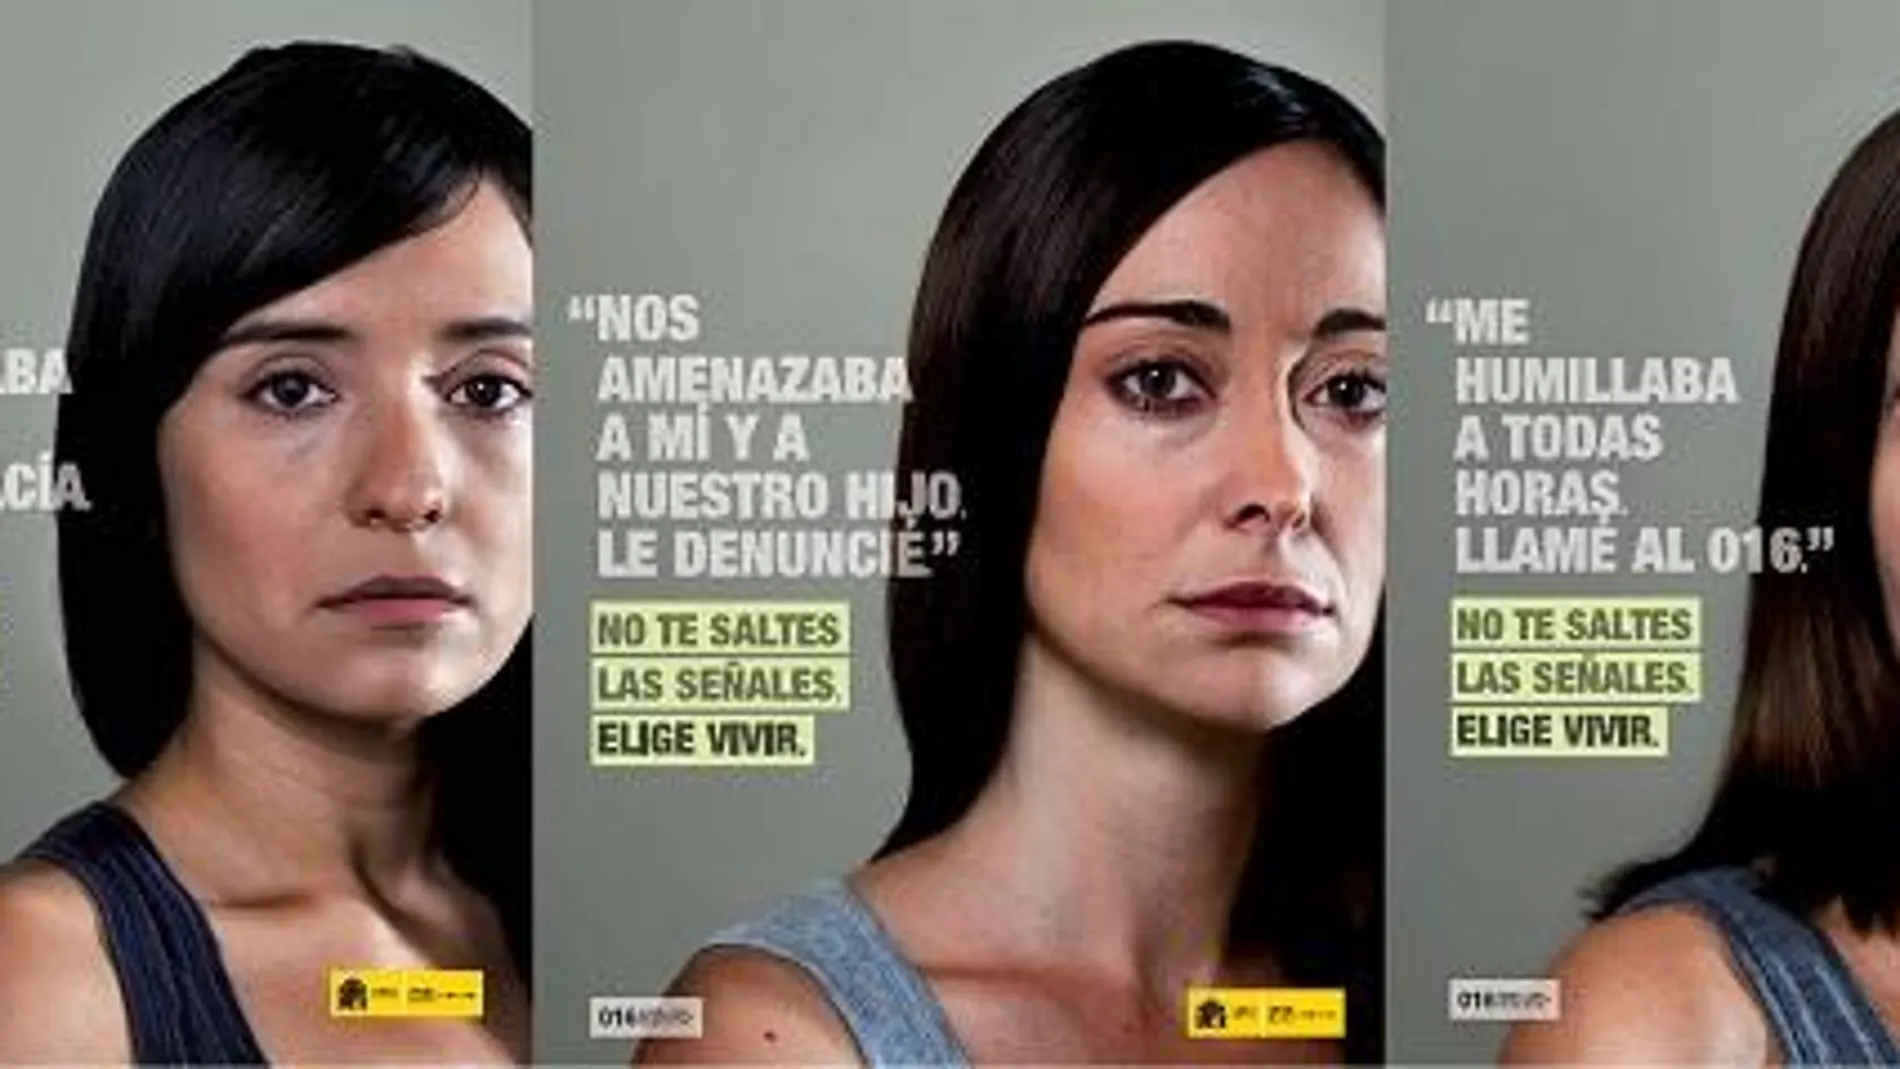 Unas 600.000 mujeres sufren hoy maltrato en España, según una macroencuesta